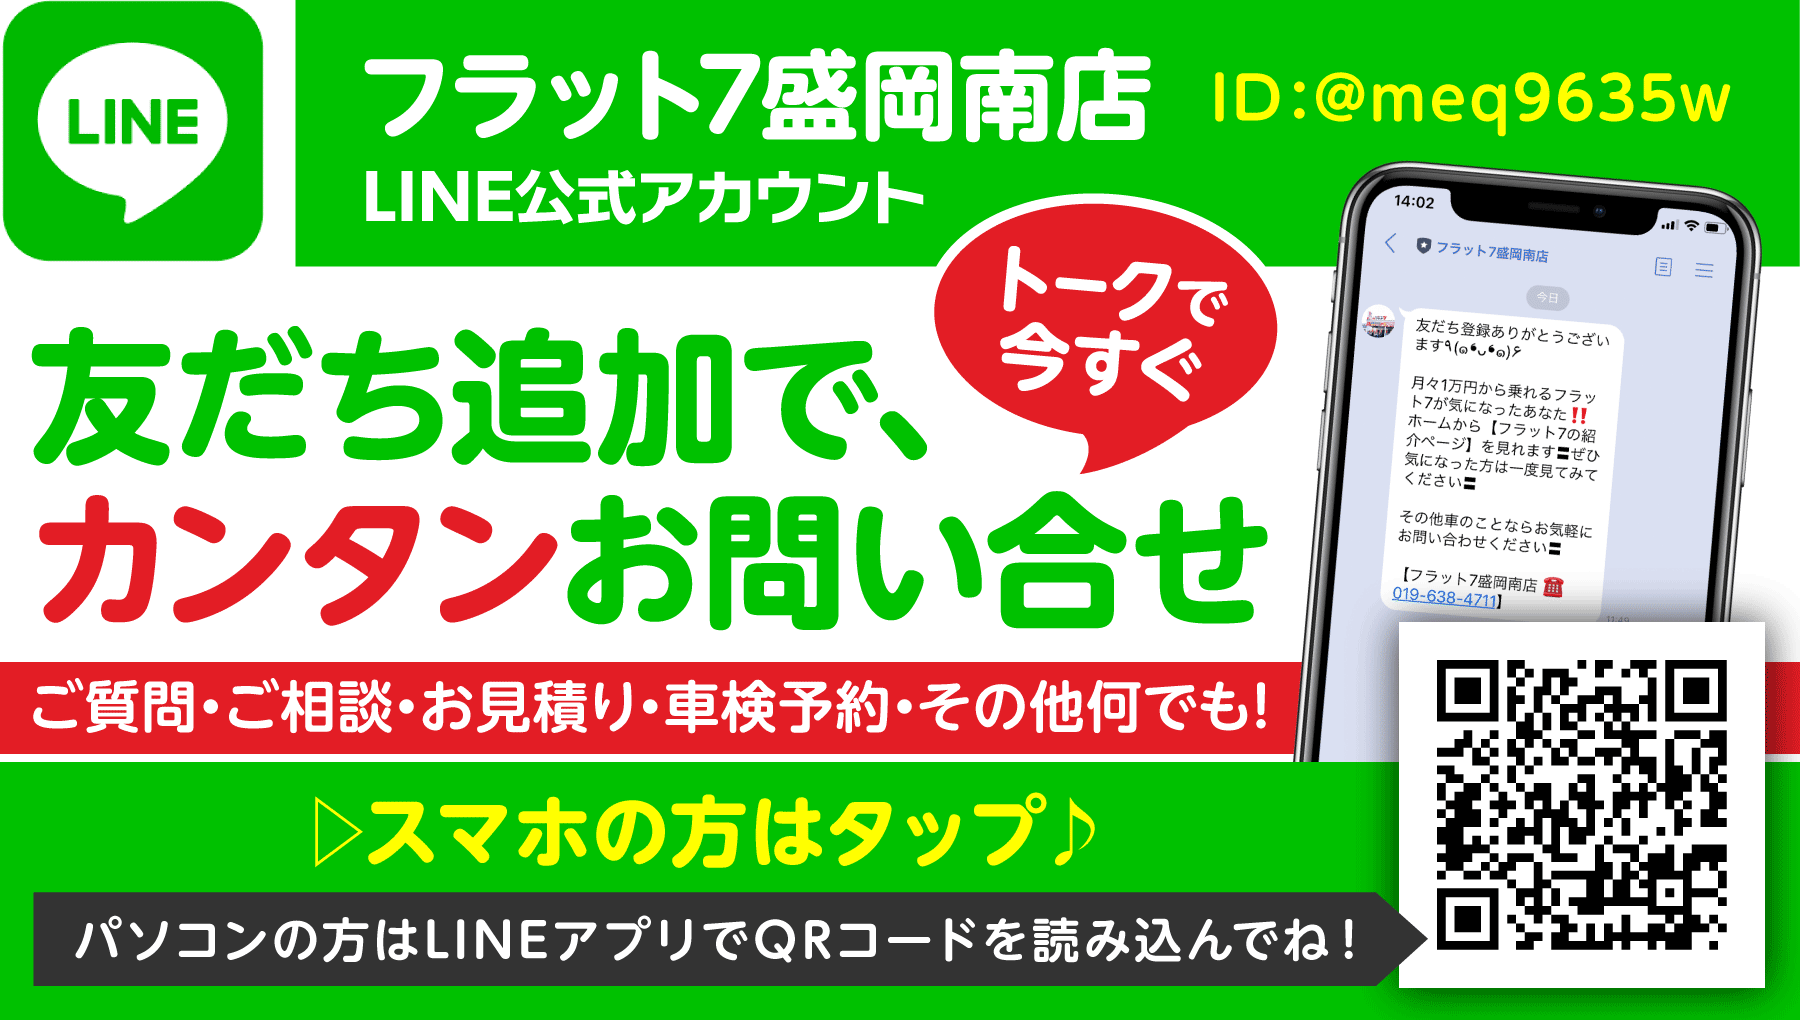 フラット７盛岡南店 LINE公式アカウント 友達追加で、カンタンお問い合わせ トークで今すぐ